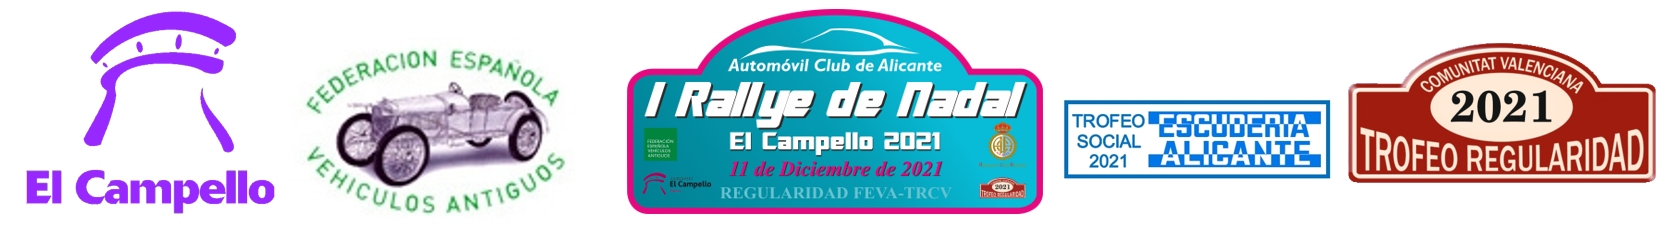 Automóvil Club de Alicante